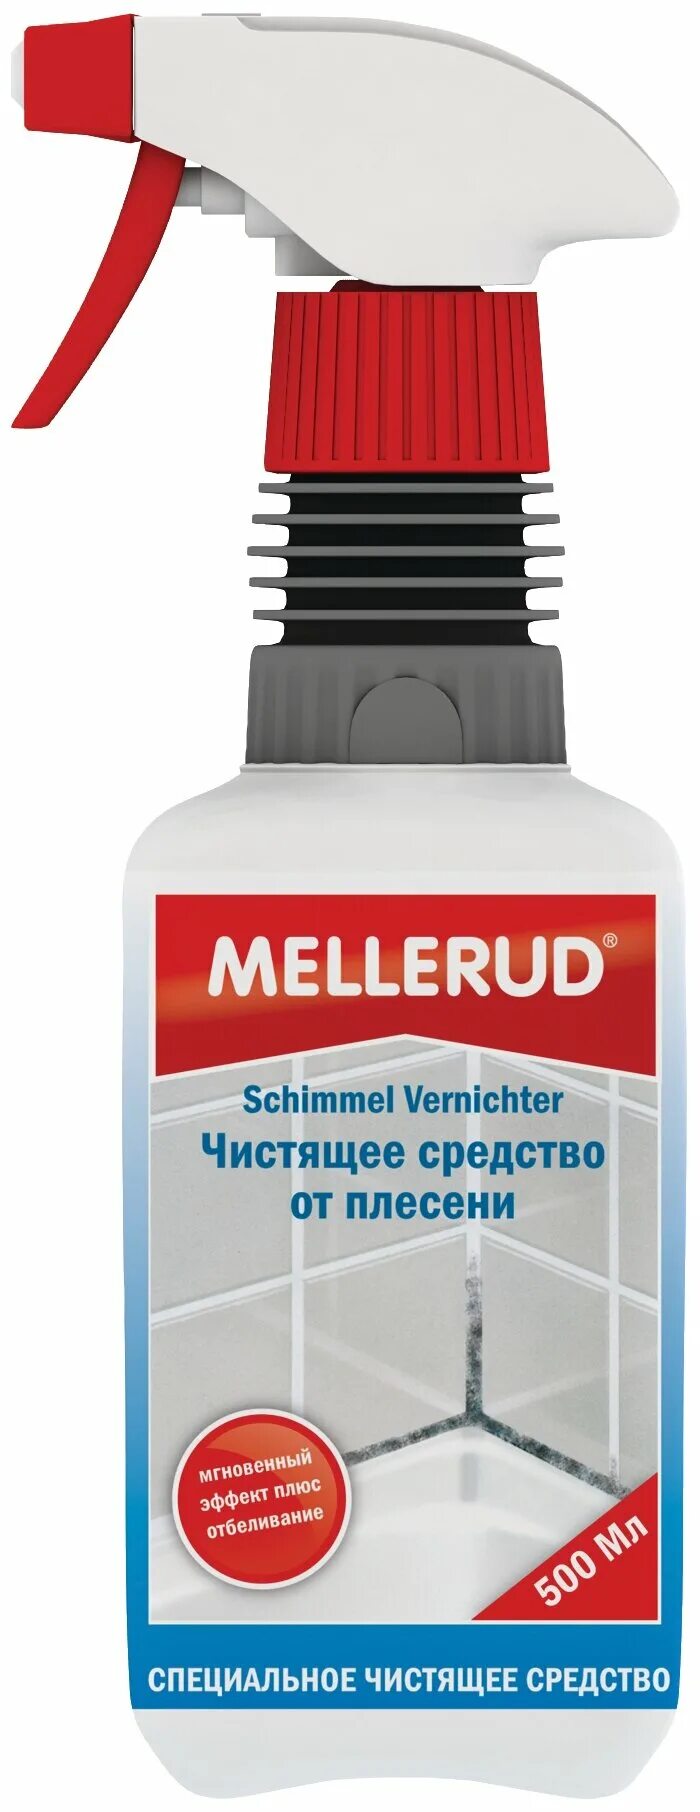 Mellerud защита плесени 0,5л. Меллеруд чистящее средство для межплиточных швов. Средство для железной поверхности Mellerud. Unicum спрей для плитки и межплиточных швов. Сильное средство для чистки